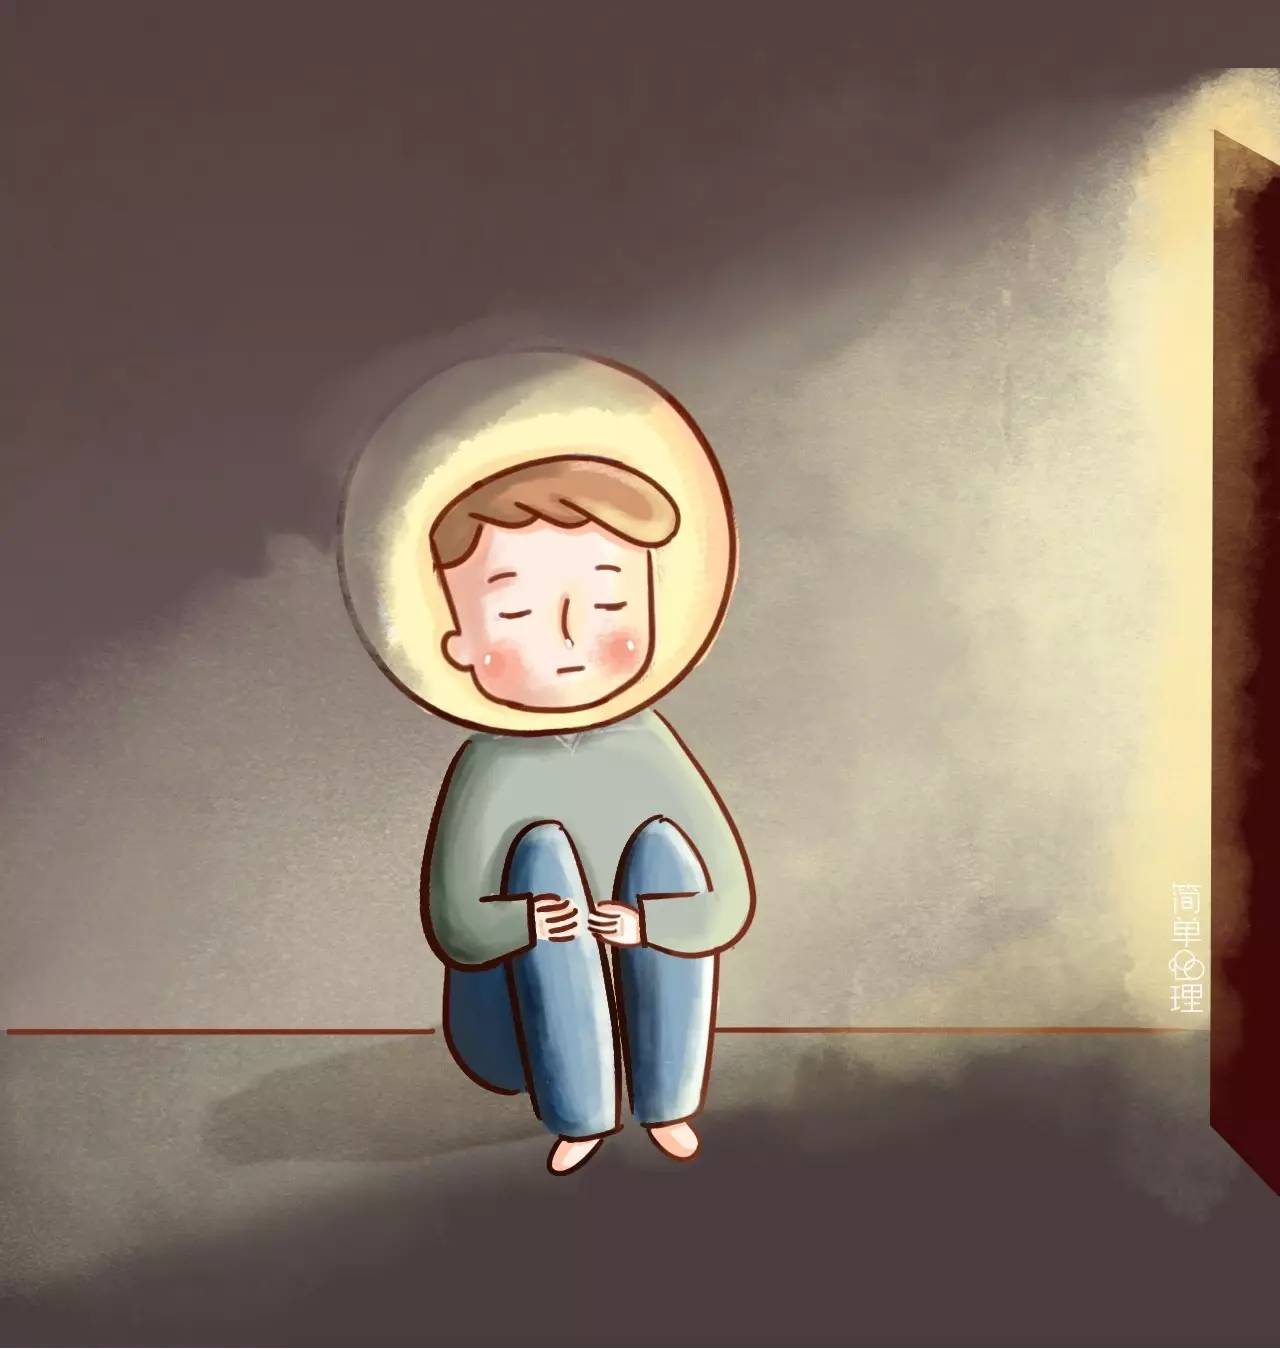 缓解抑郁情绪的7个方法 | 当你感到抑郁时,就来看看这个小漫画吧